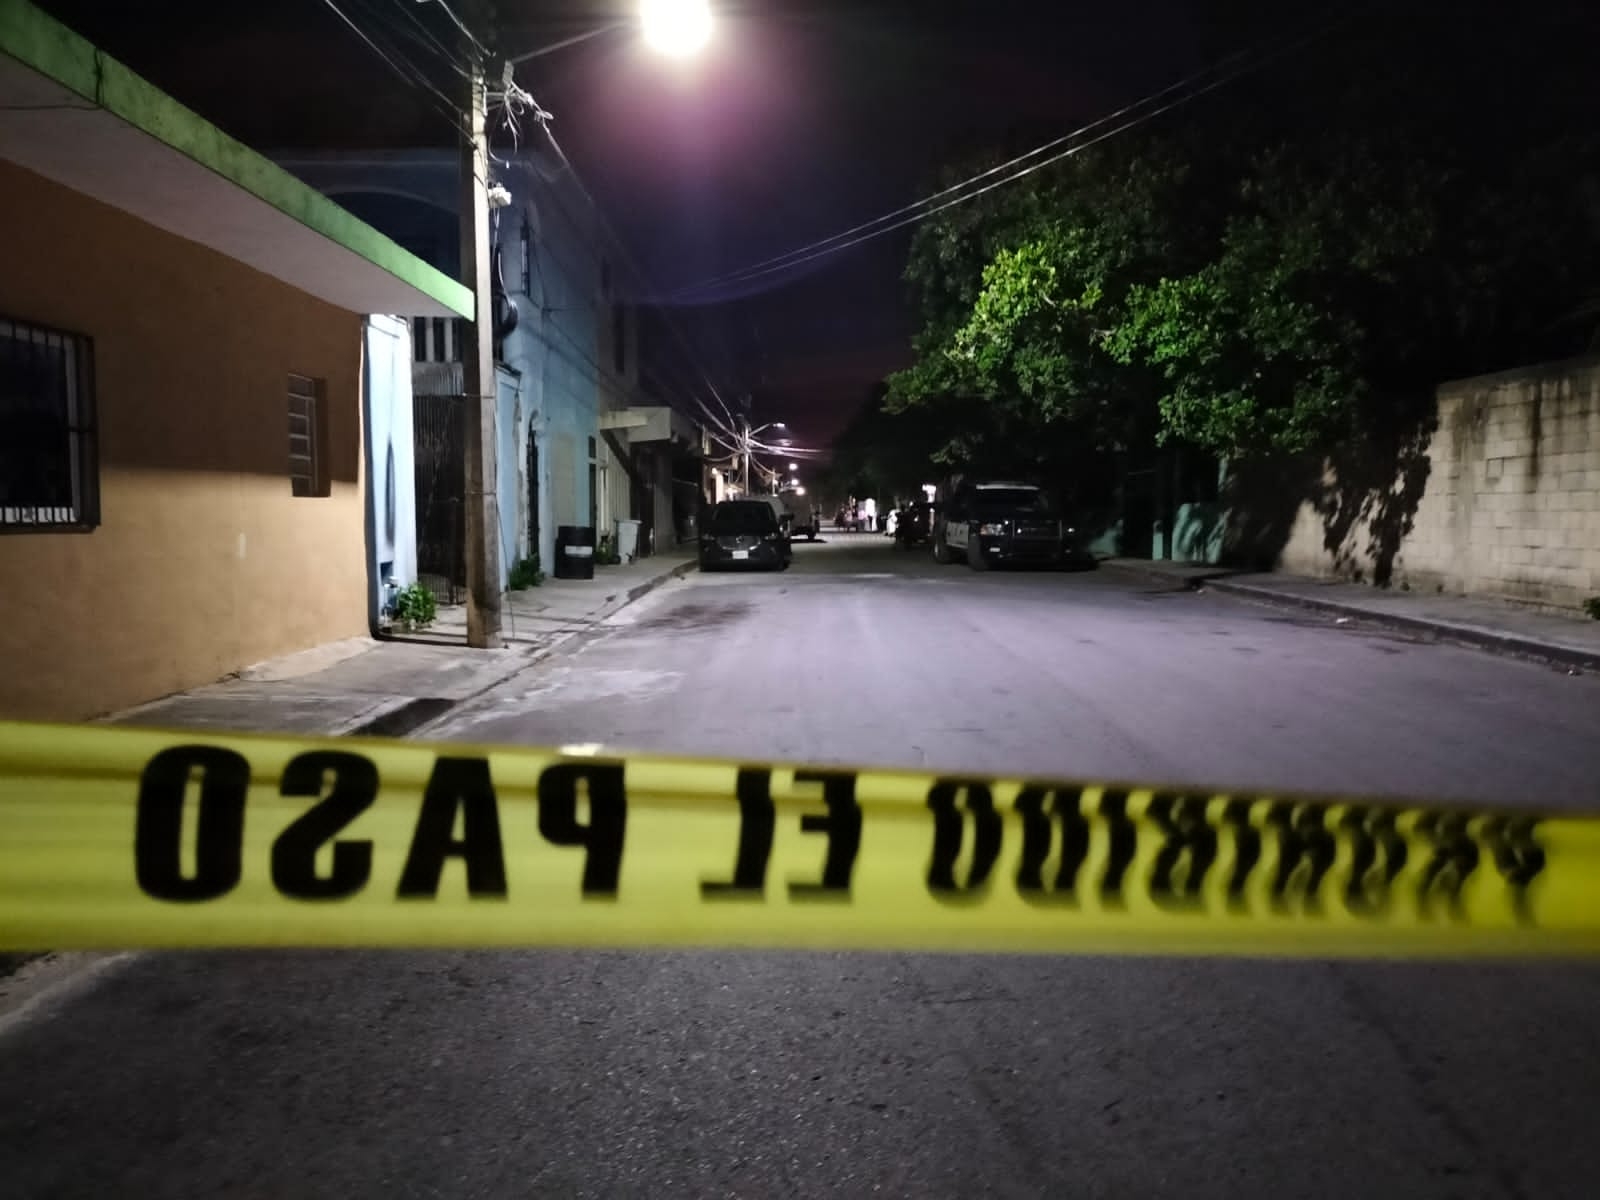 Una mujer fue encontrada sin vida dentro de una vivienda en Playa del Carmen